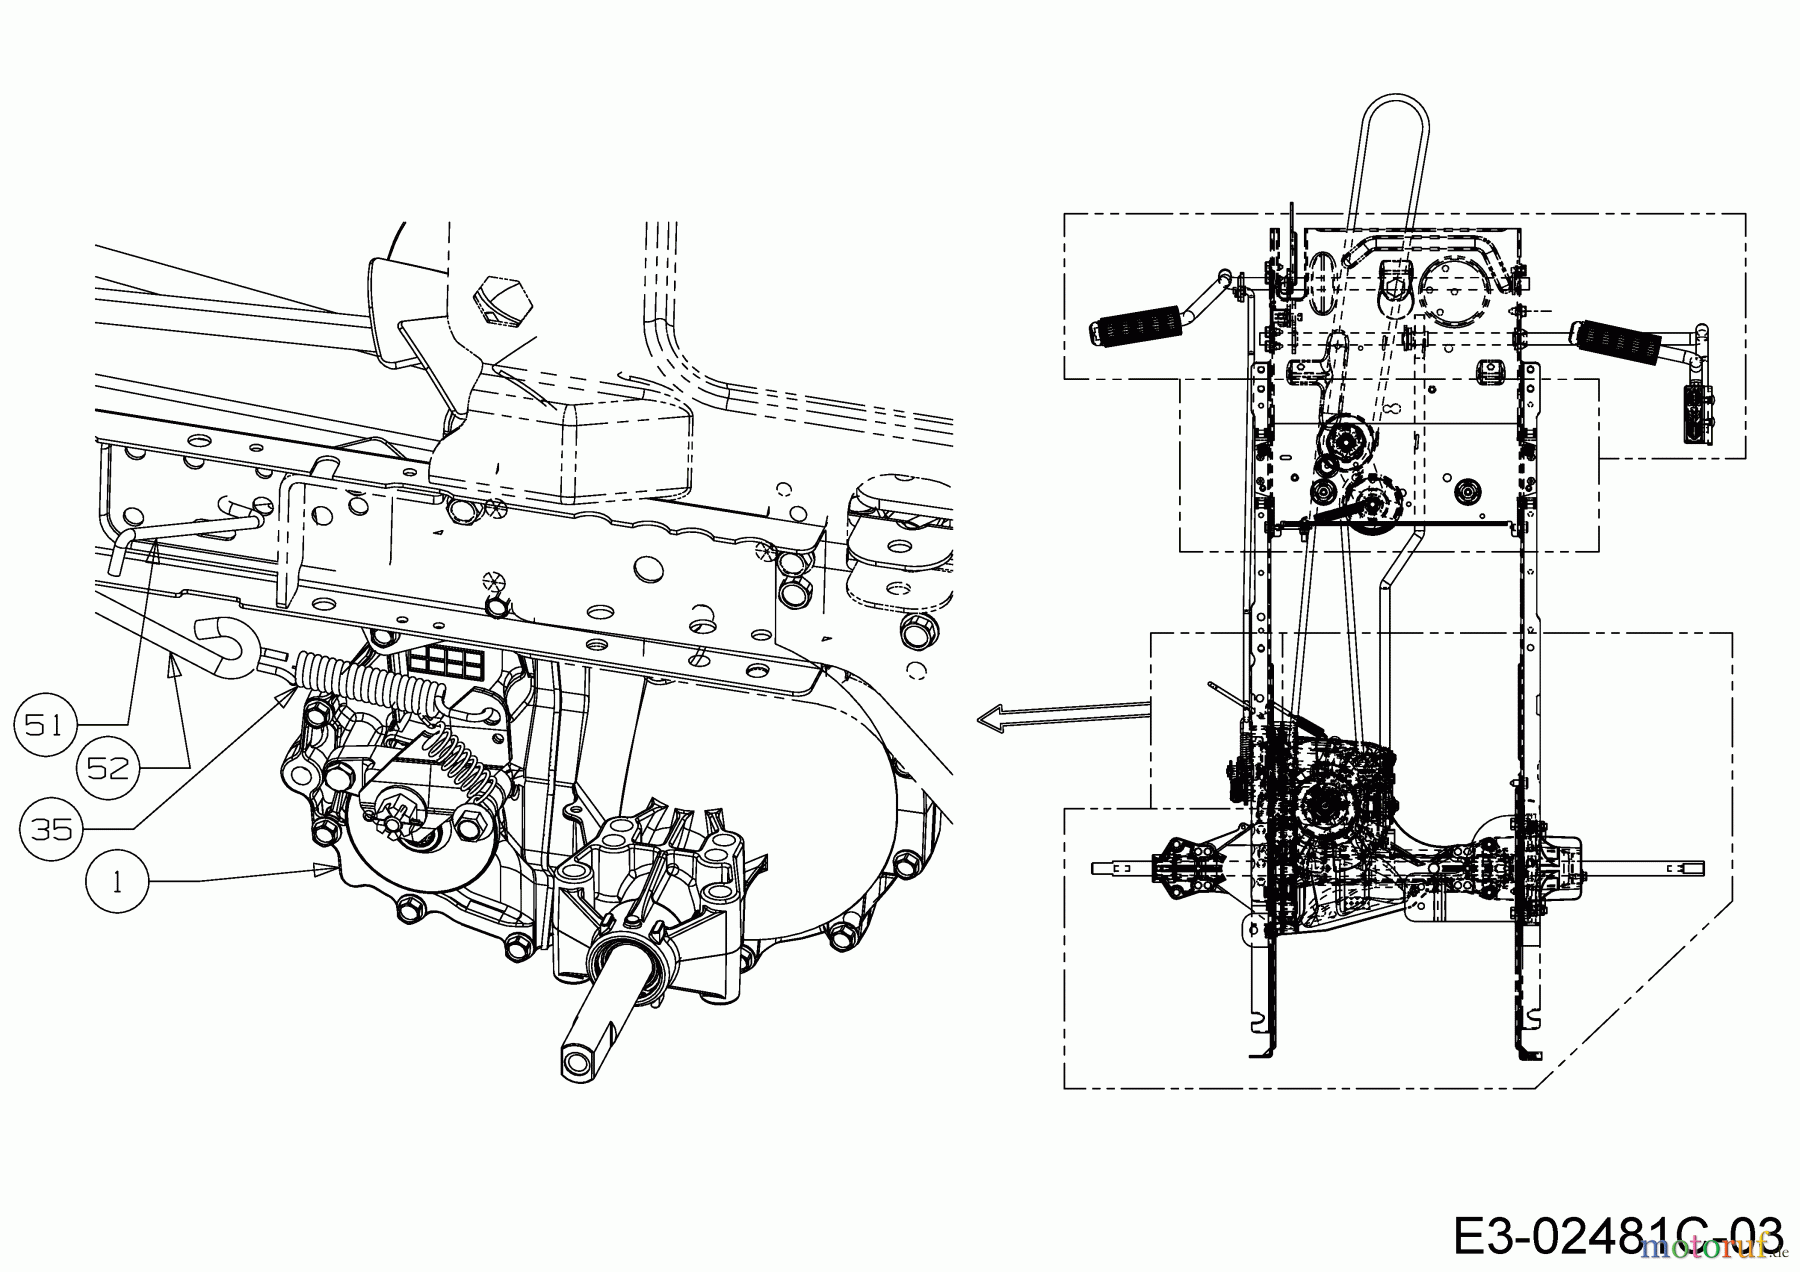  Helington Rasentraktoren H 105 HK 13AG71KN686  (2019) Bremsstange, Bypassstange, Hydrostat